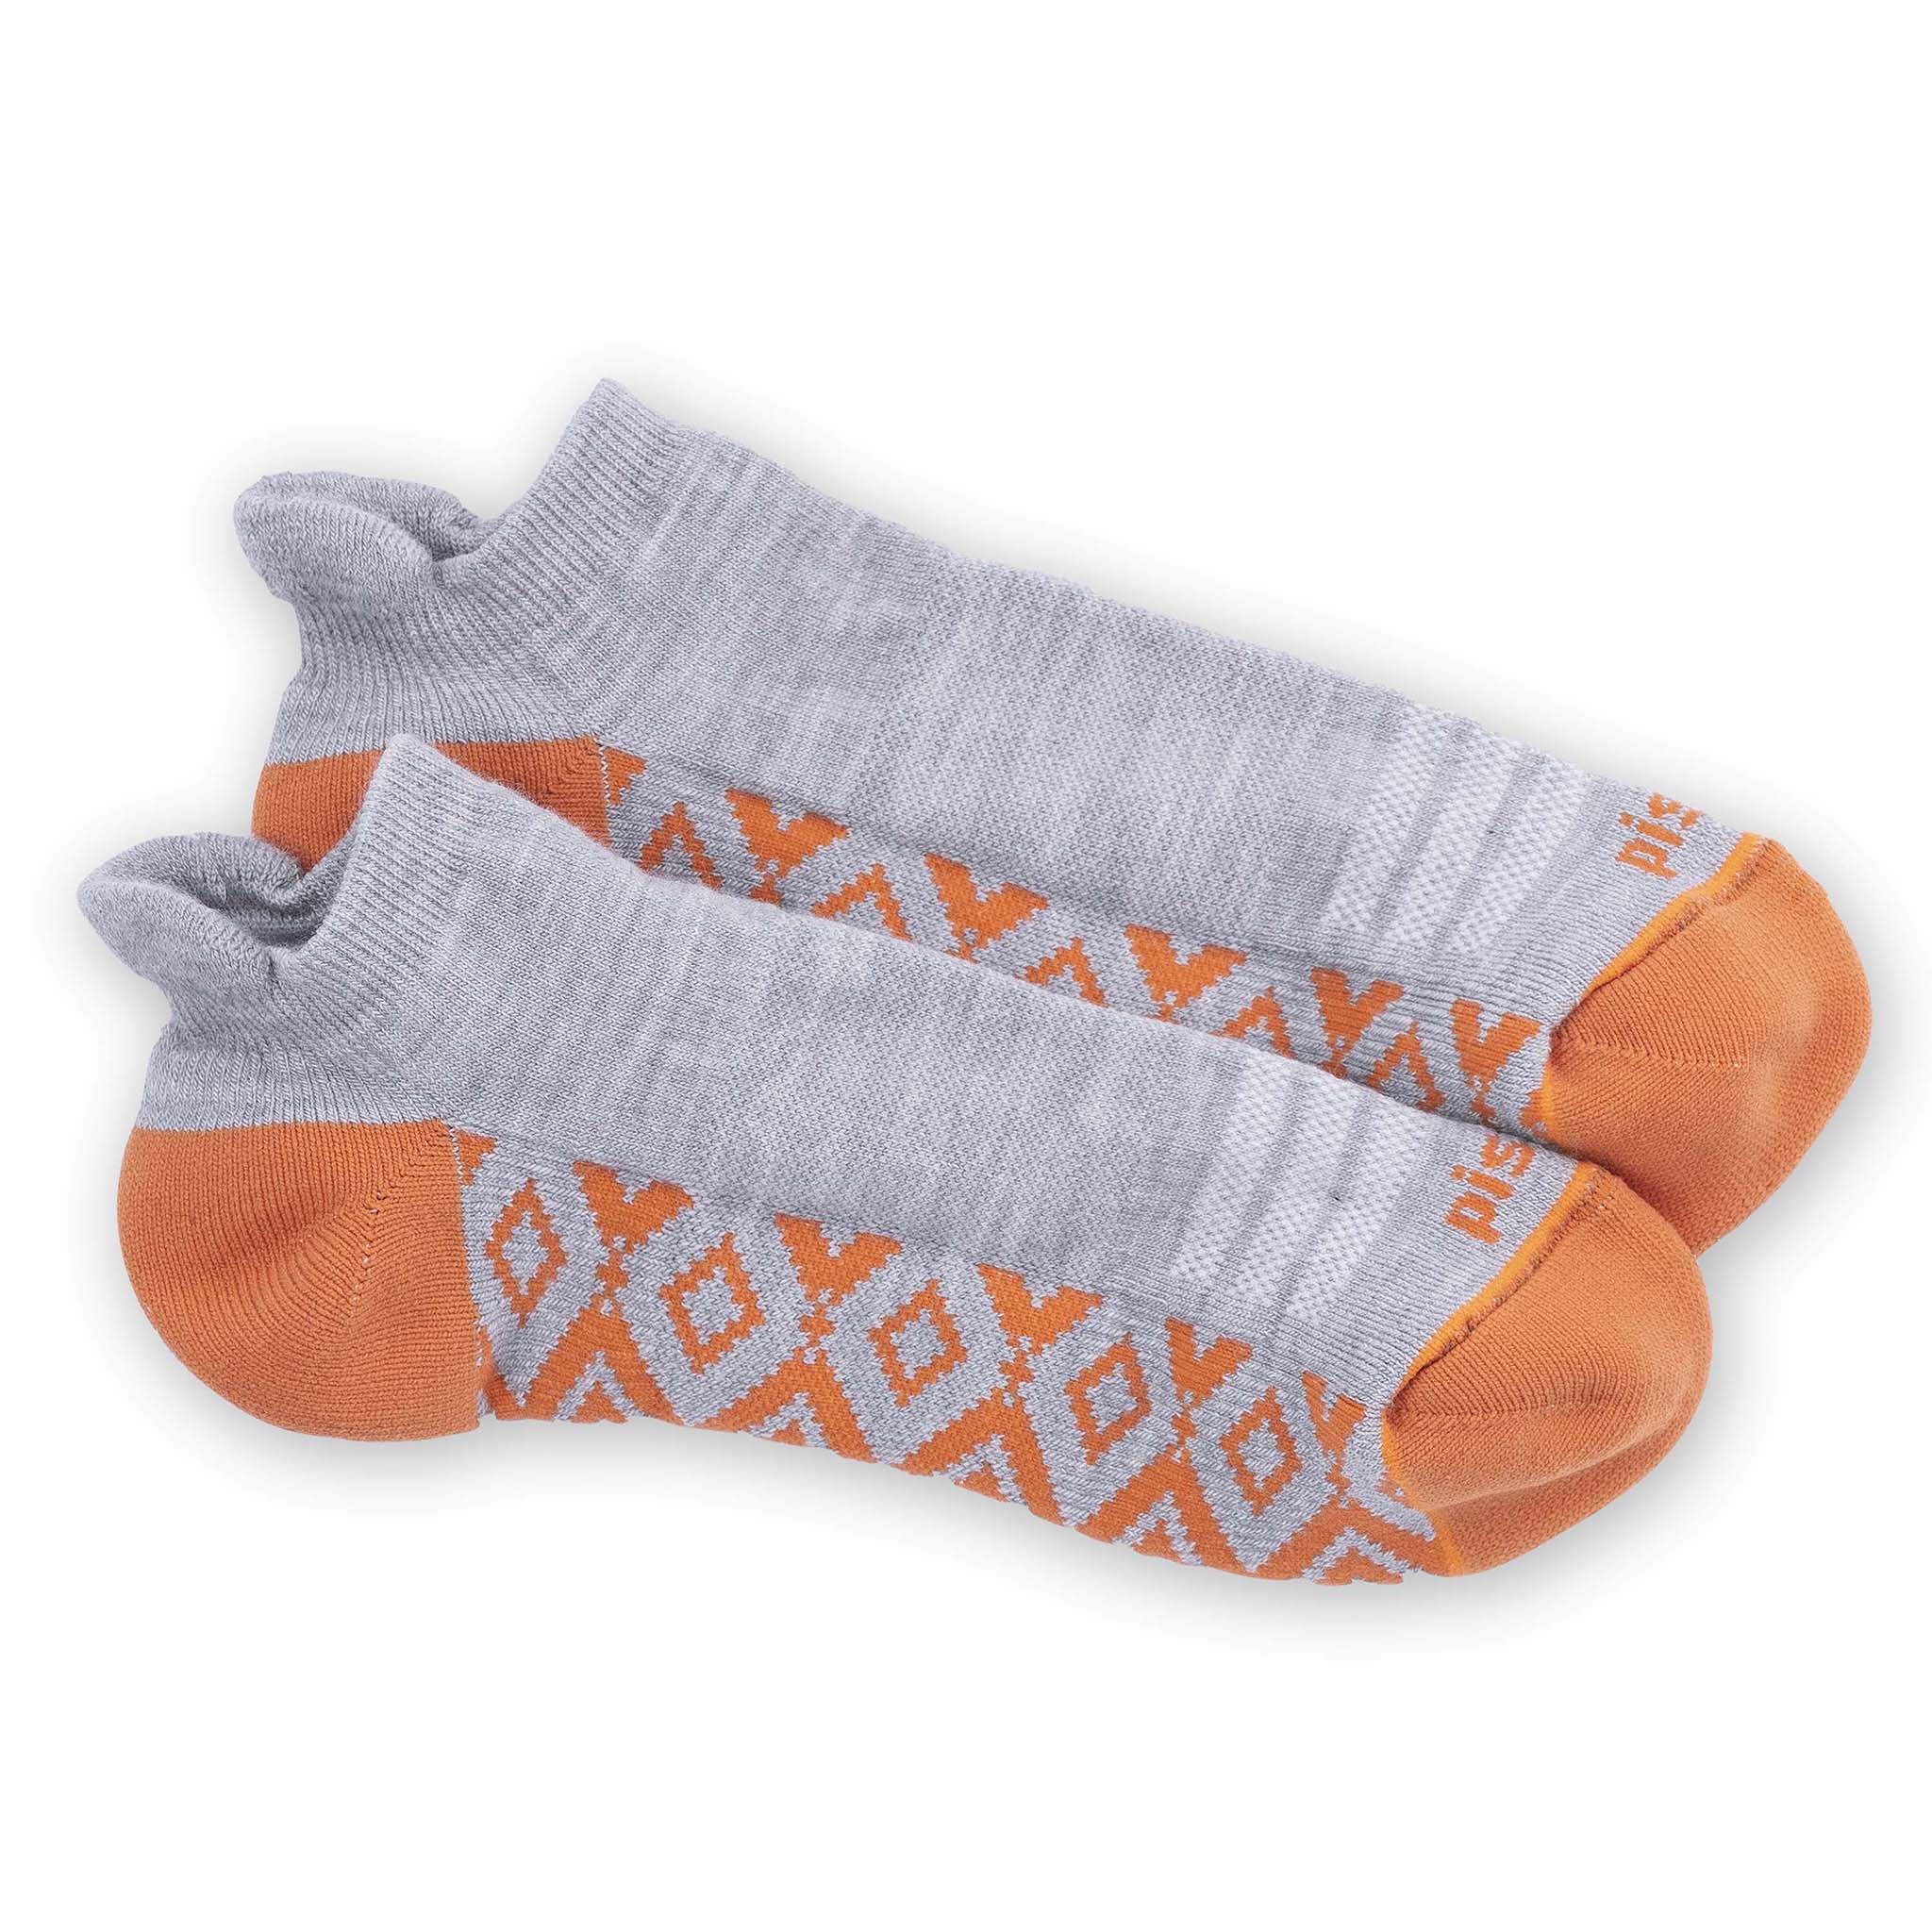 Socks - Reel Champ/Ankle Plain